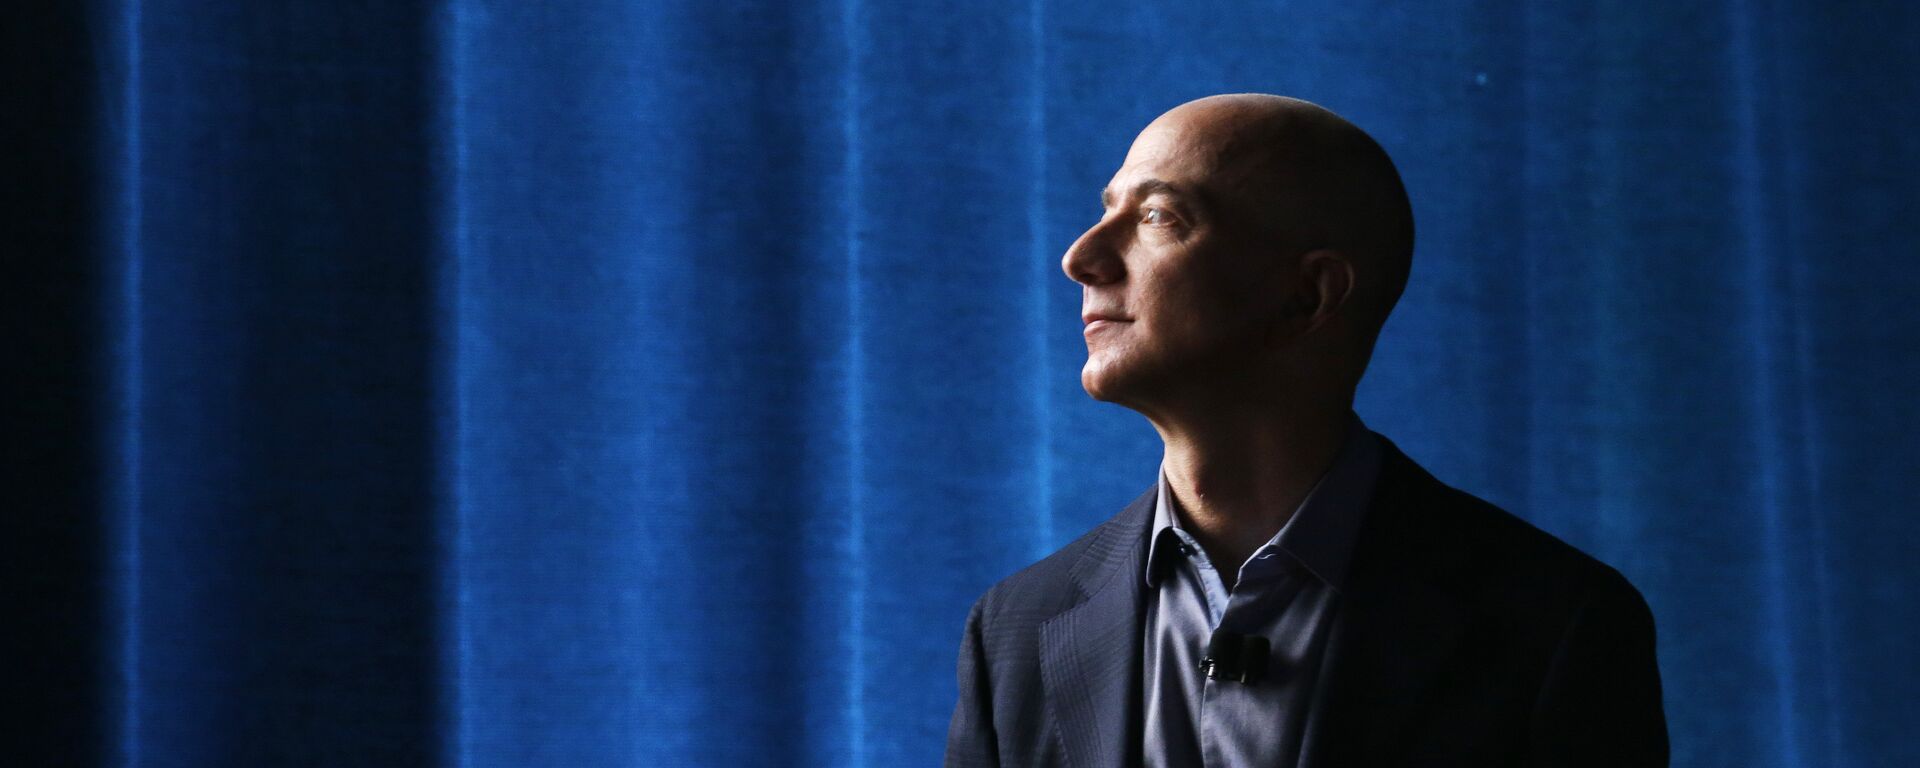 Jeff Bezos, propietario de Amazon  - Sputnik Mundo, 1920, 06.12.2020